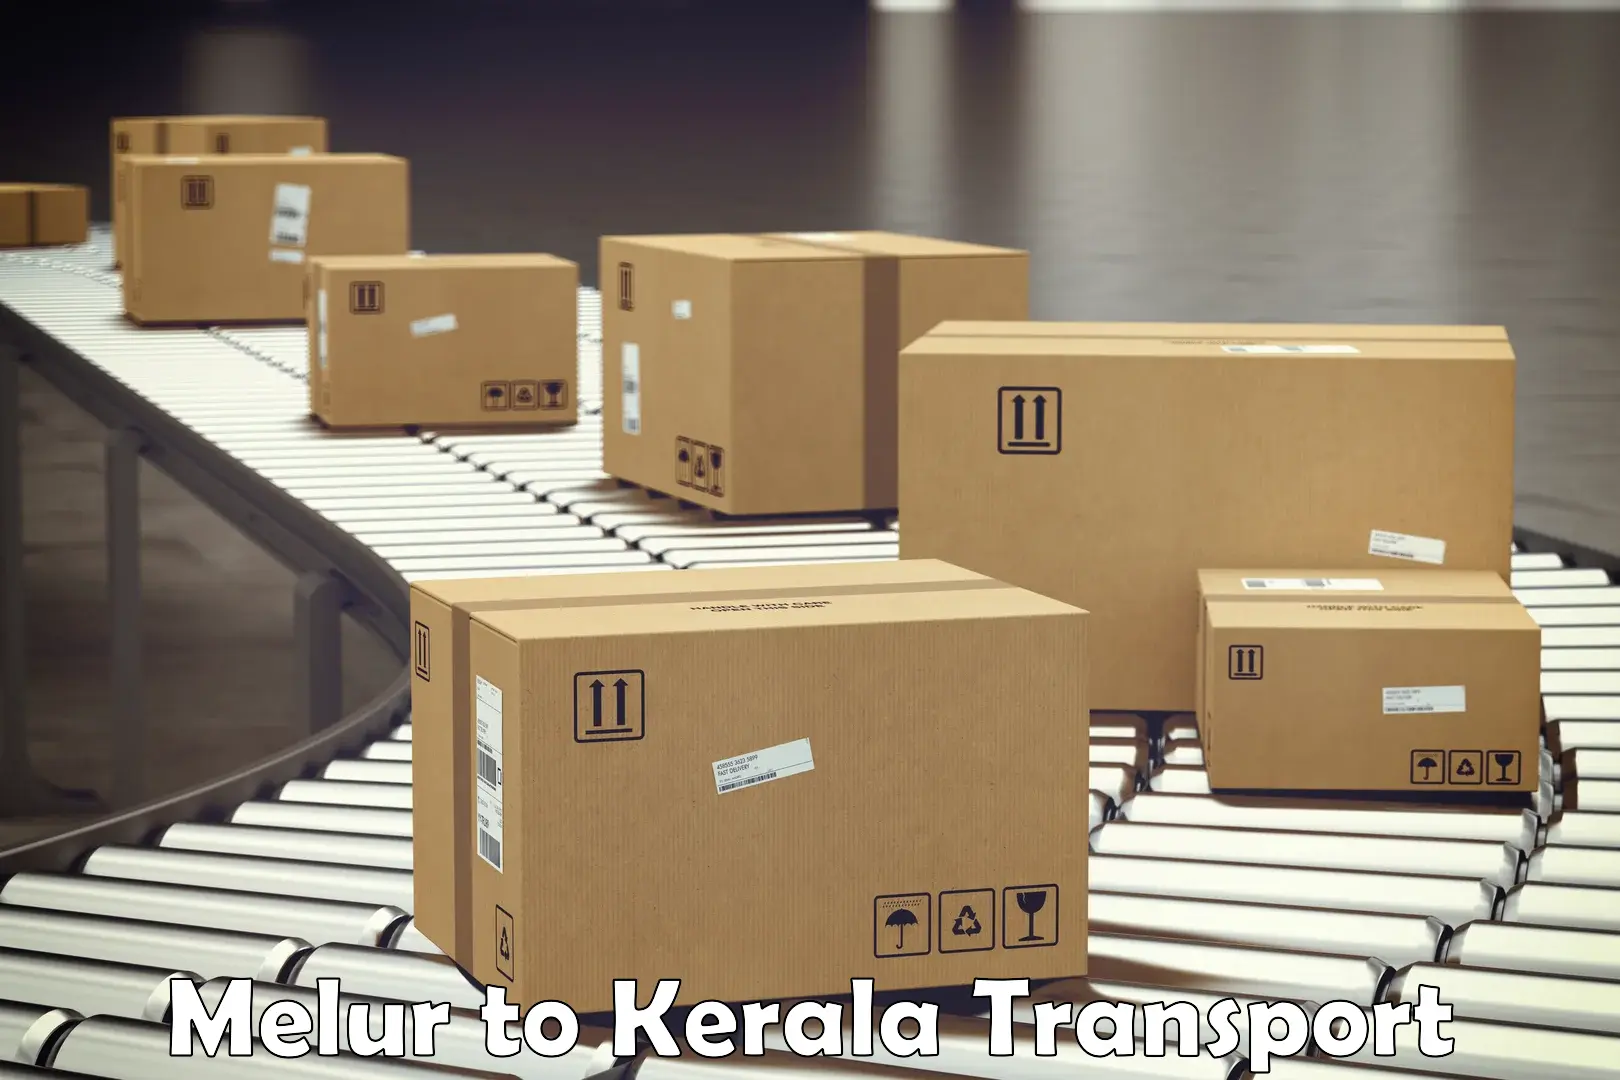 Container transport service Melur to Trivandrum